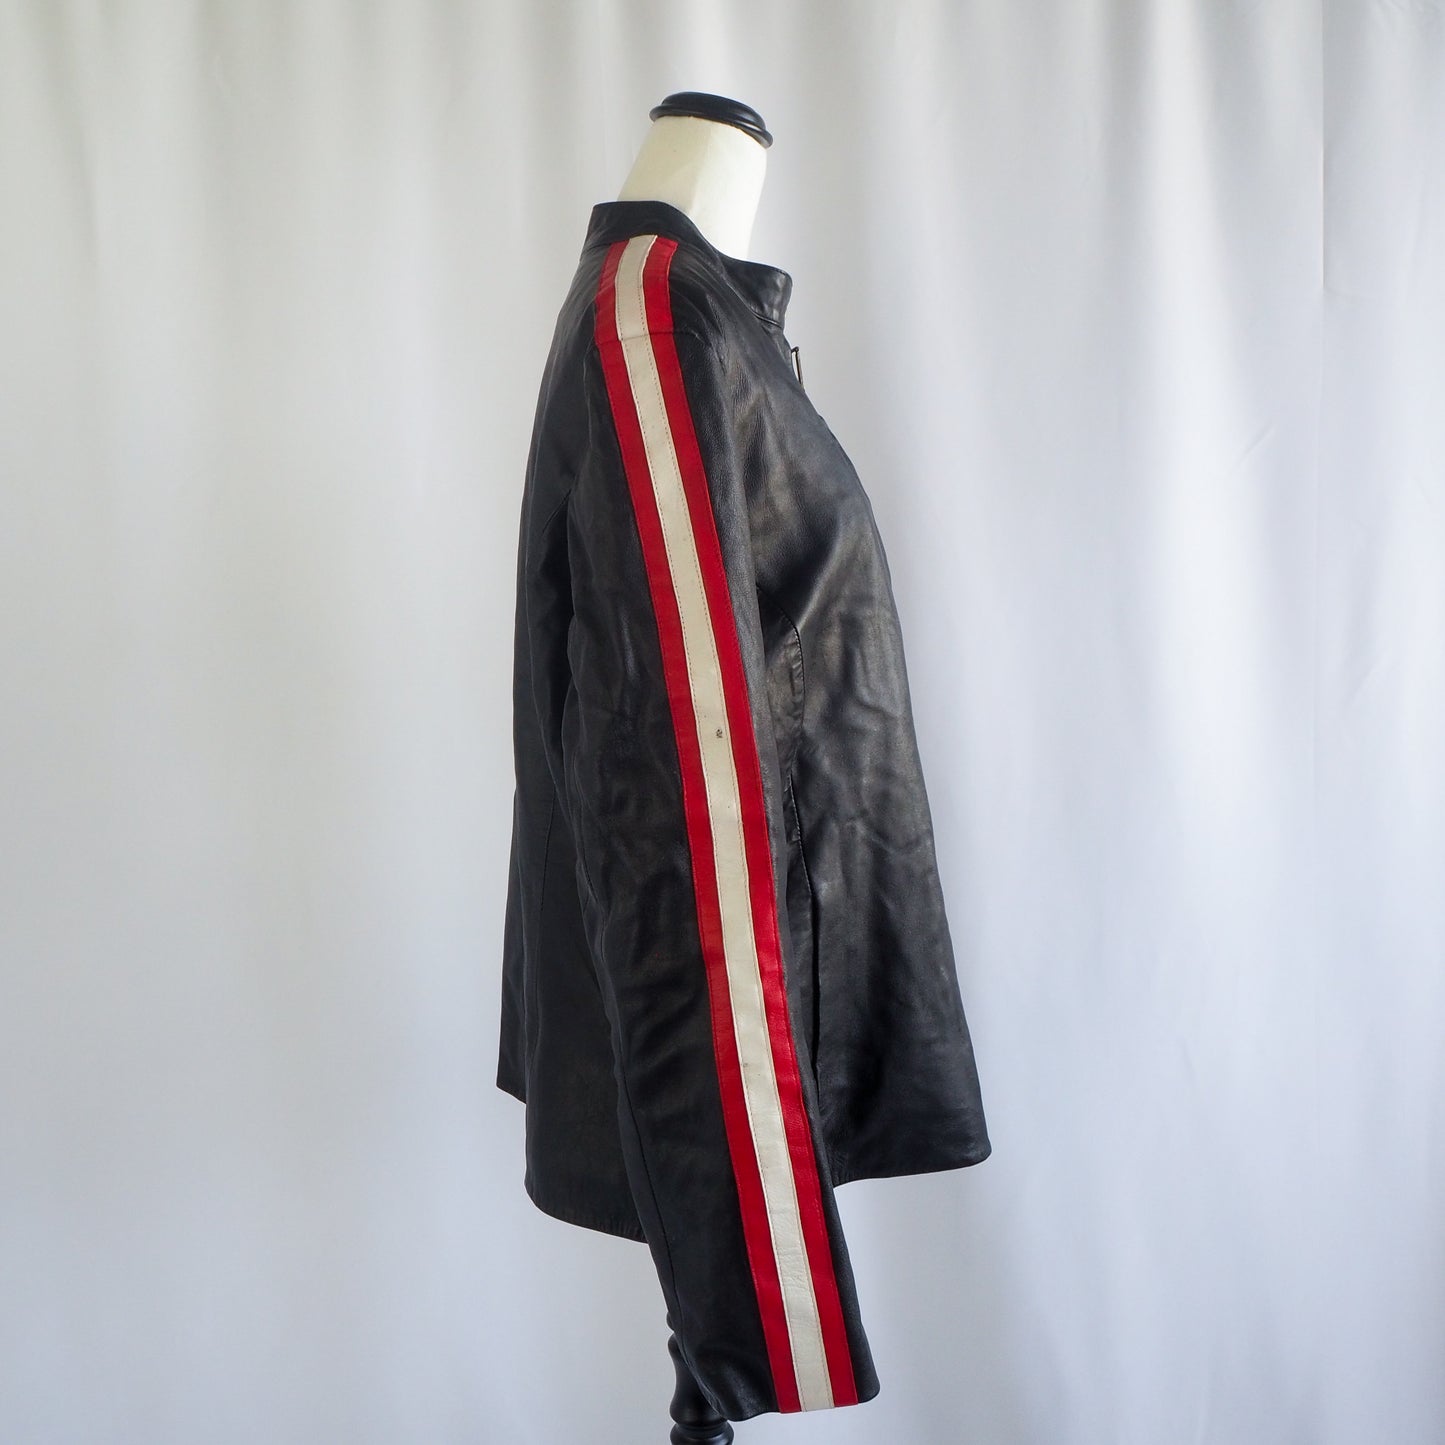 Meldin | Black Leather Jacket (2XL)